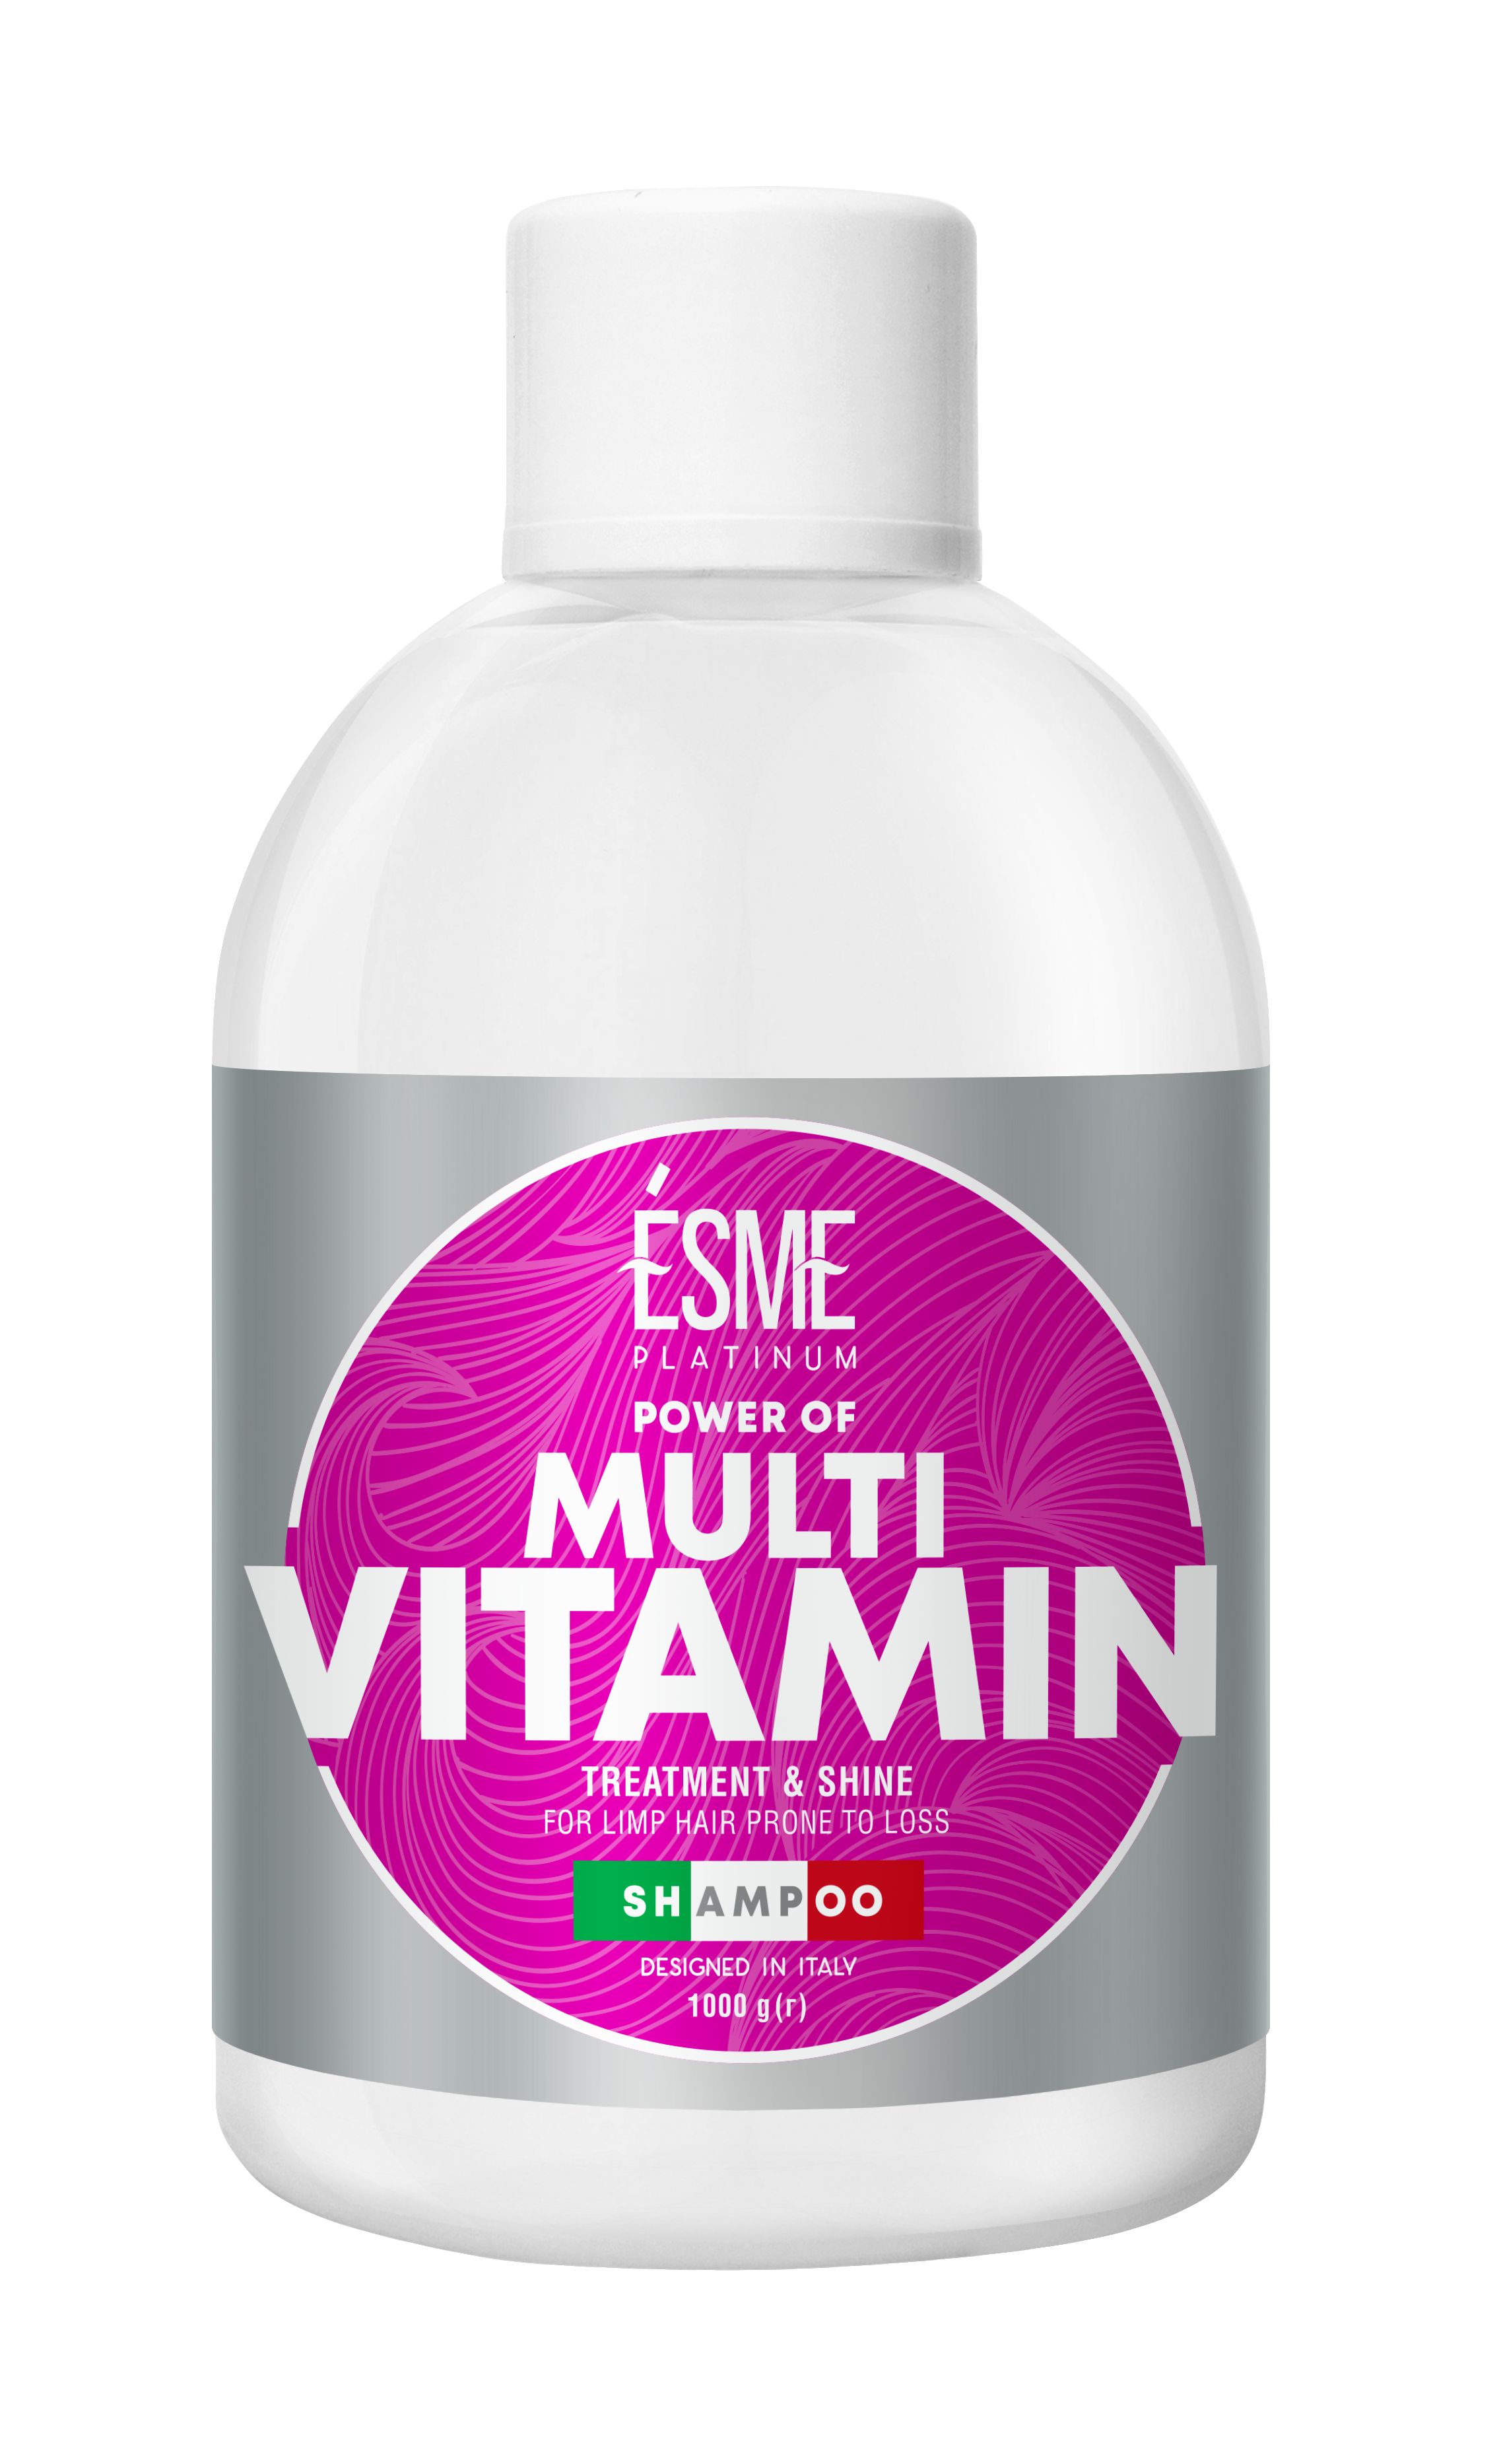 Шампунь Esme Platinum Multivitamin з вітамінним комплексом, для слабкого волосся, 1000 мл - фото 1